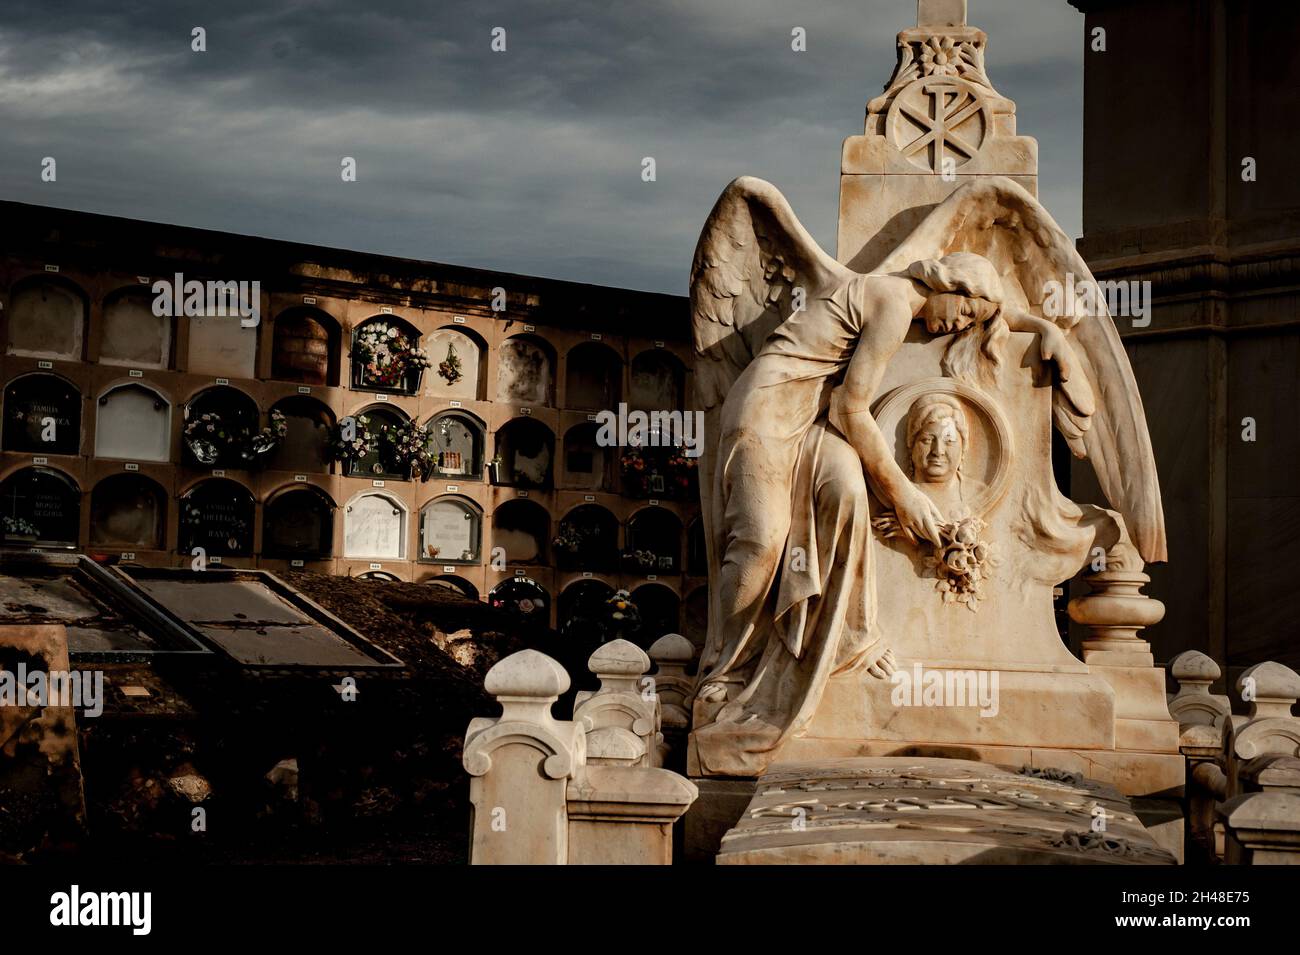 Barcelona, Spanien. 1. November 2021, Barcelona, Spanien: Skulptur ziert ein Pantheon des Friedhofs von Poblenou in Barcelona. Der 01. November ist der katholische Feiertag Allerheiligen, der dem Gedenken an die Verstorbenen gewidmet ist. Quelle: Jordi Boixareu/Alamy Live News Stockfoto